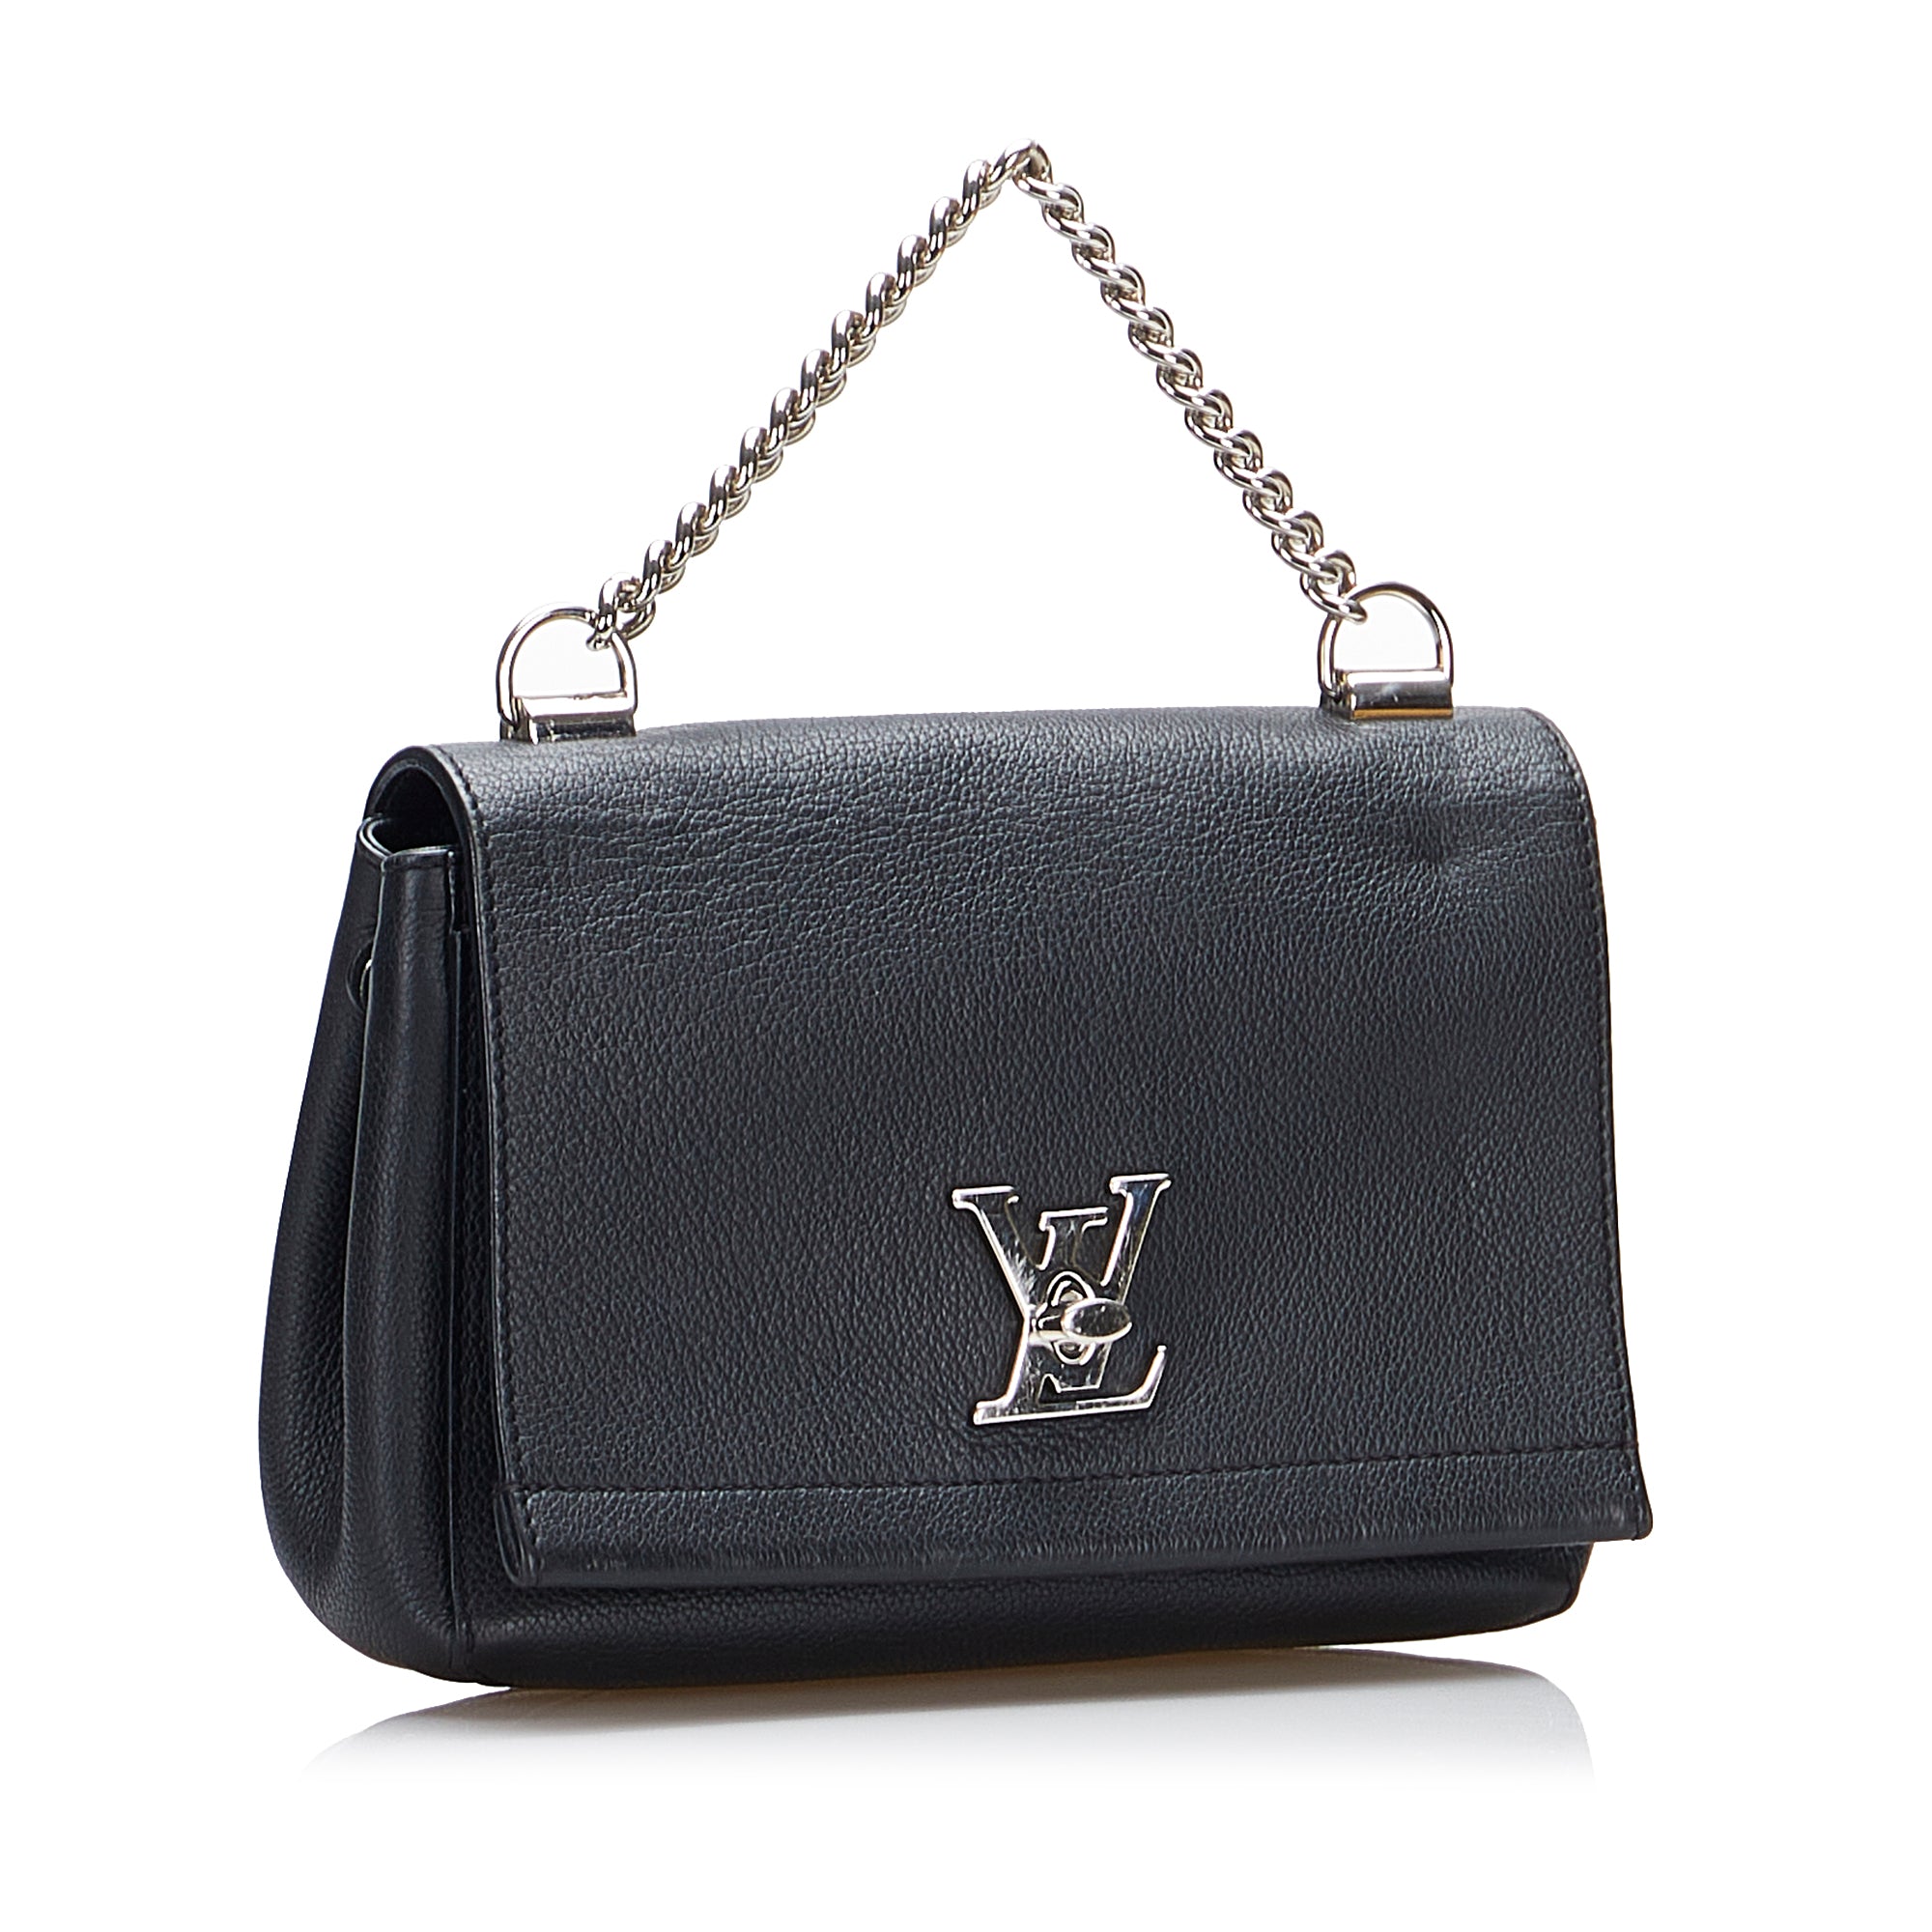 AUTHENTIC LOUIS VUITTON Lockme II BB Leather Shoulder Bag EXCELLENT